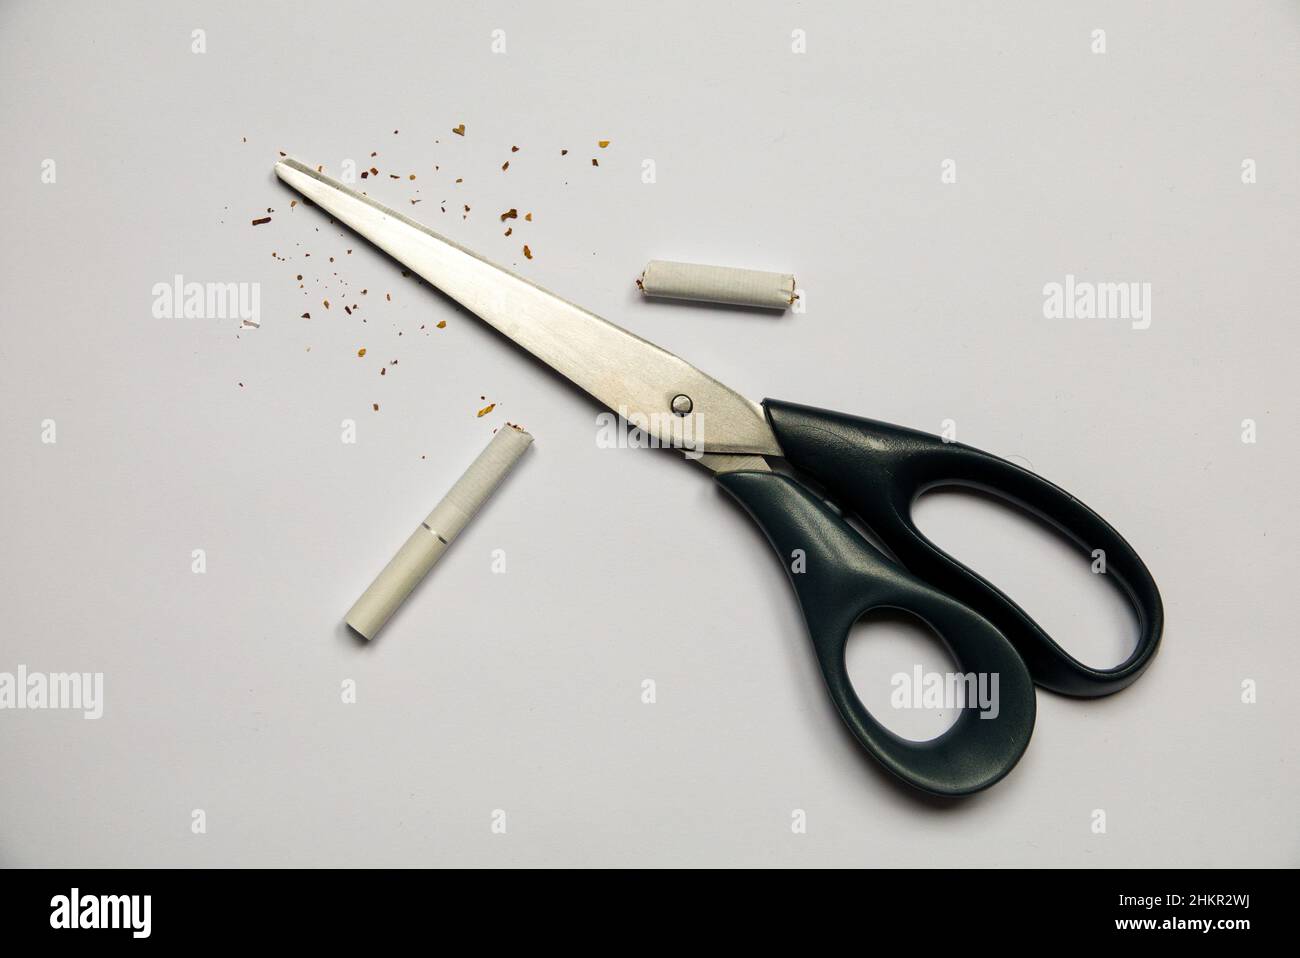 Cigarette in scissors. Bad habit. Stock Photo